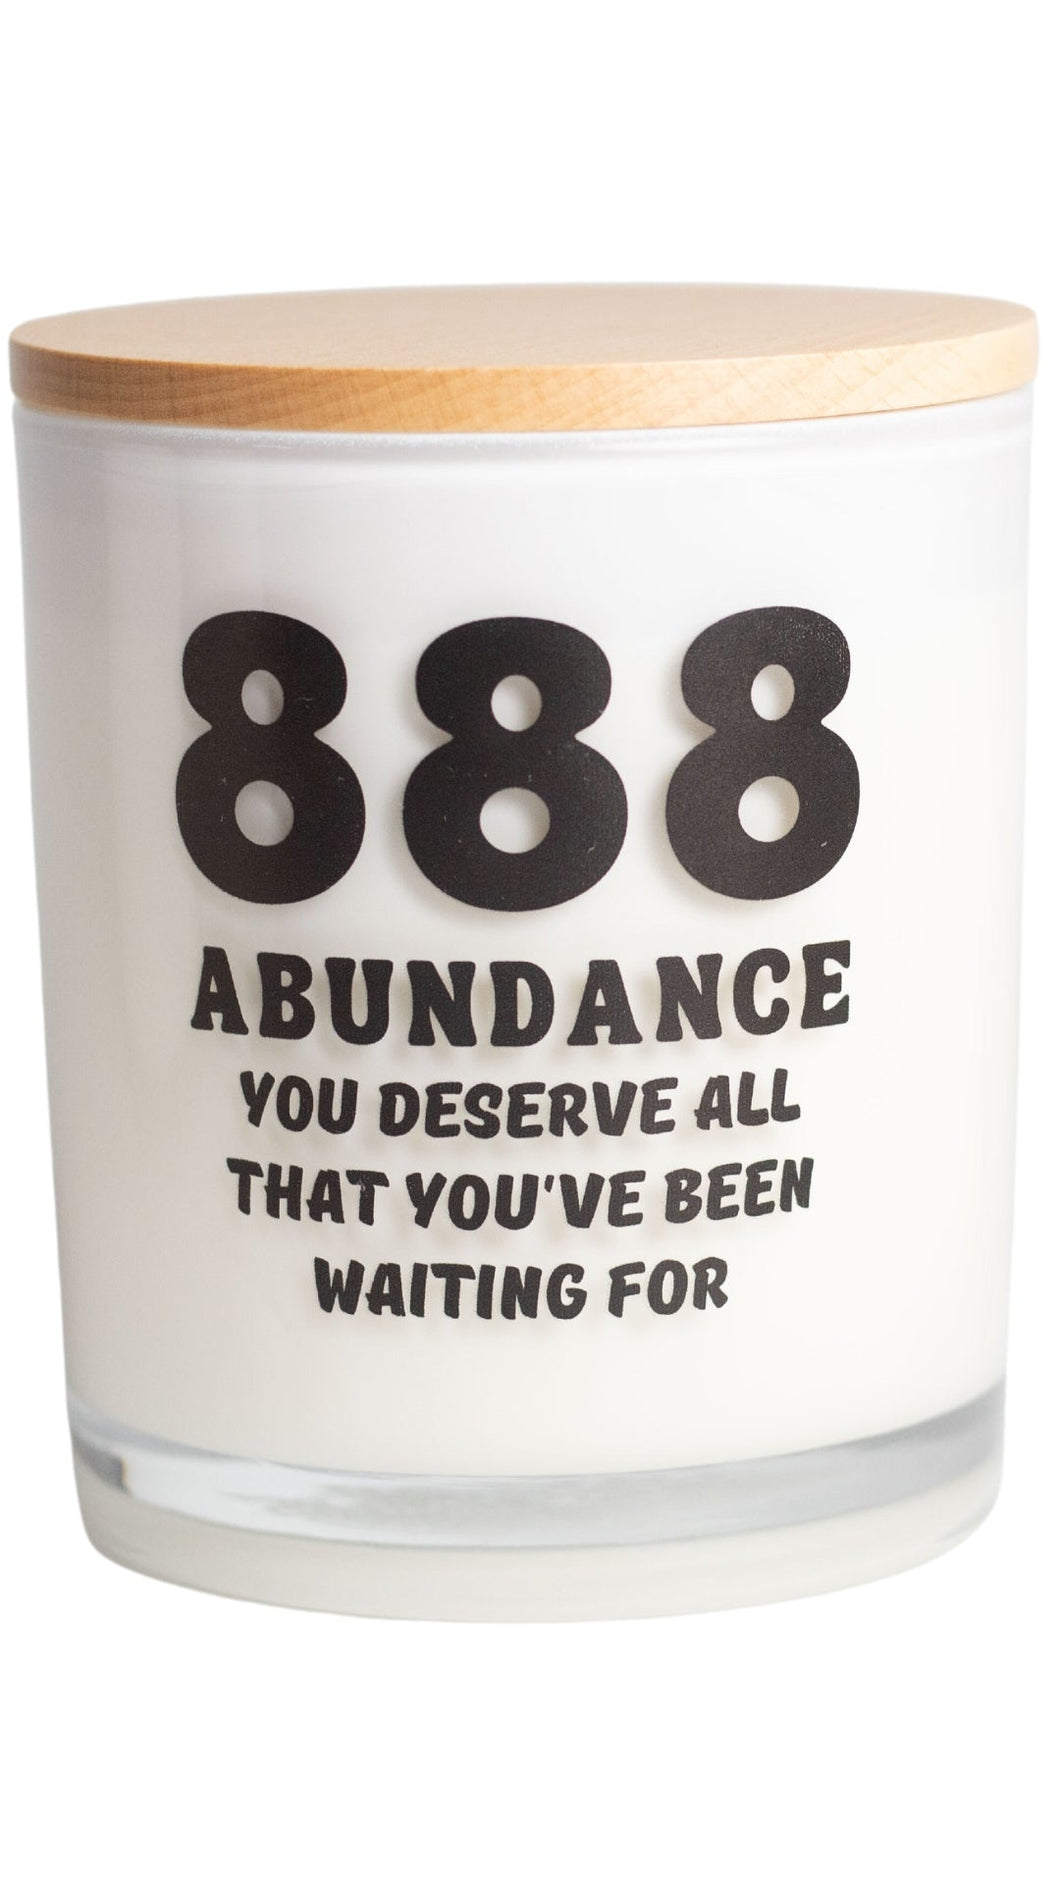 888 Abundance Candle